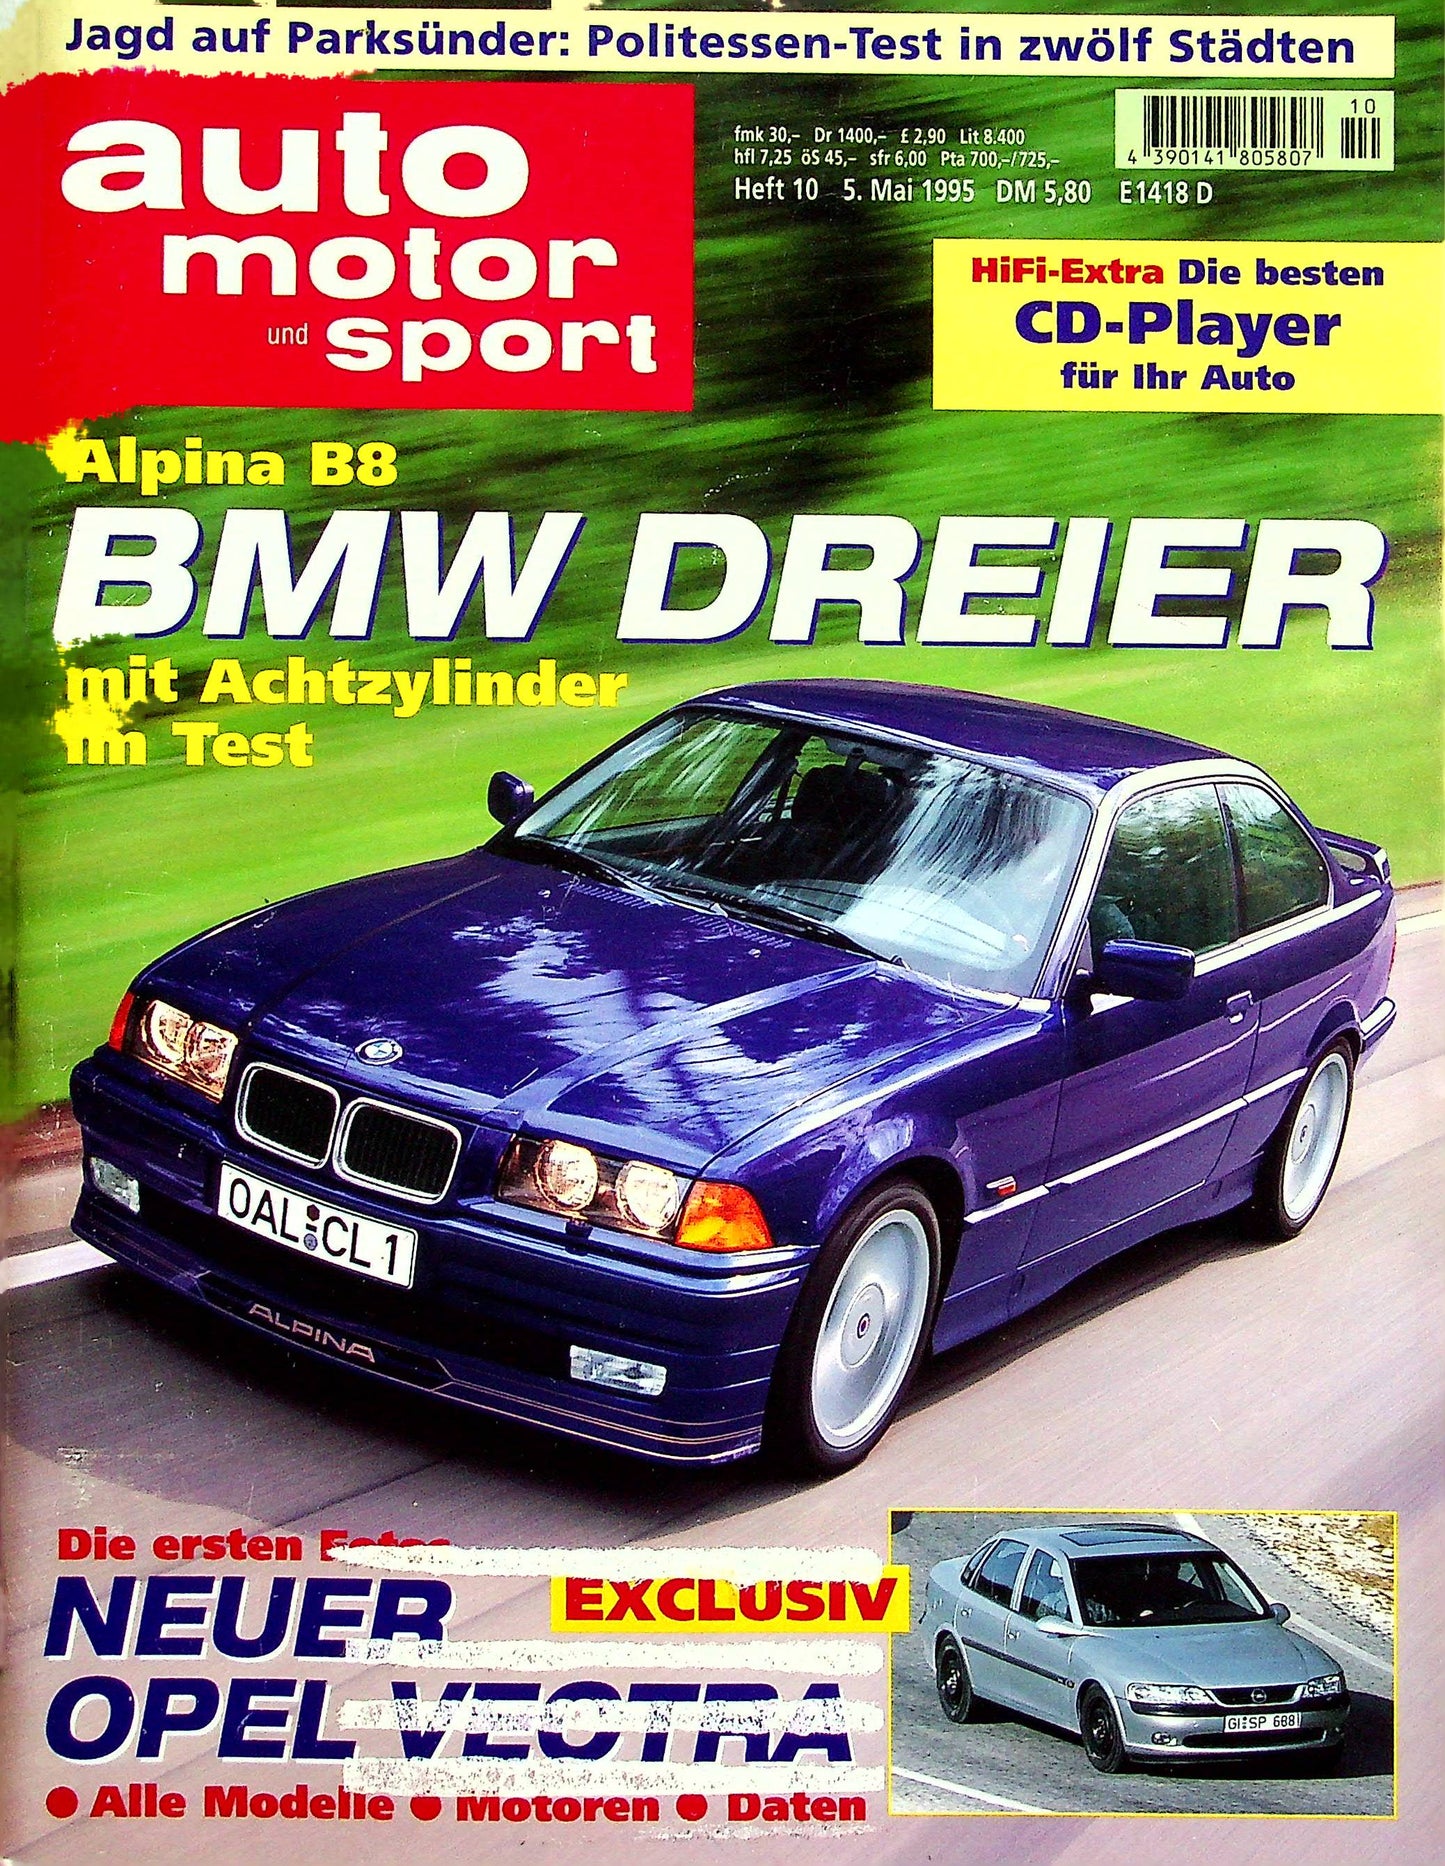 Auto Motor und Sport 10/1995